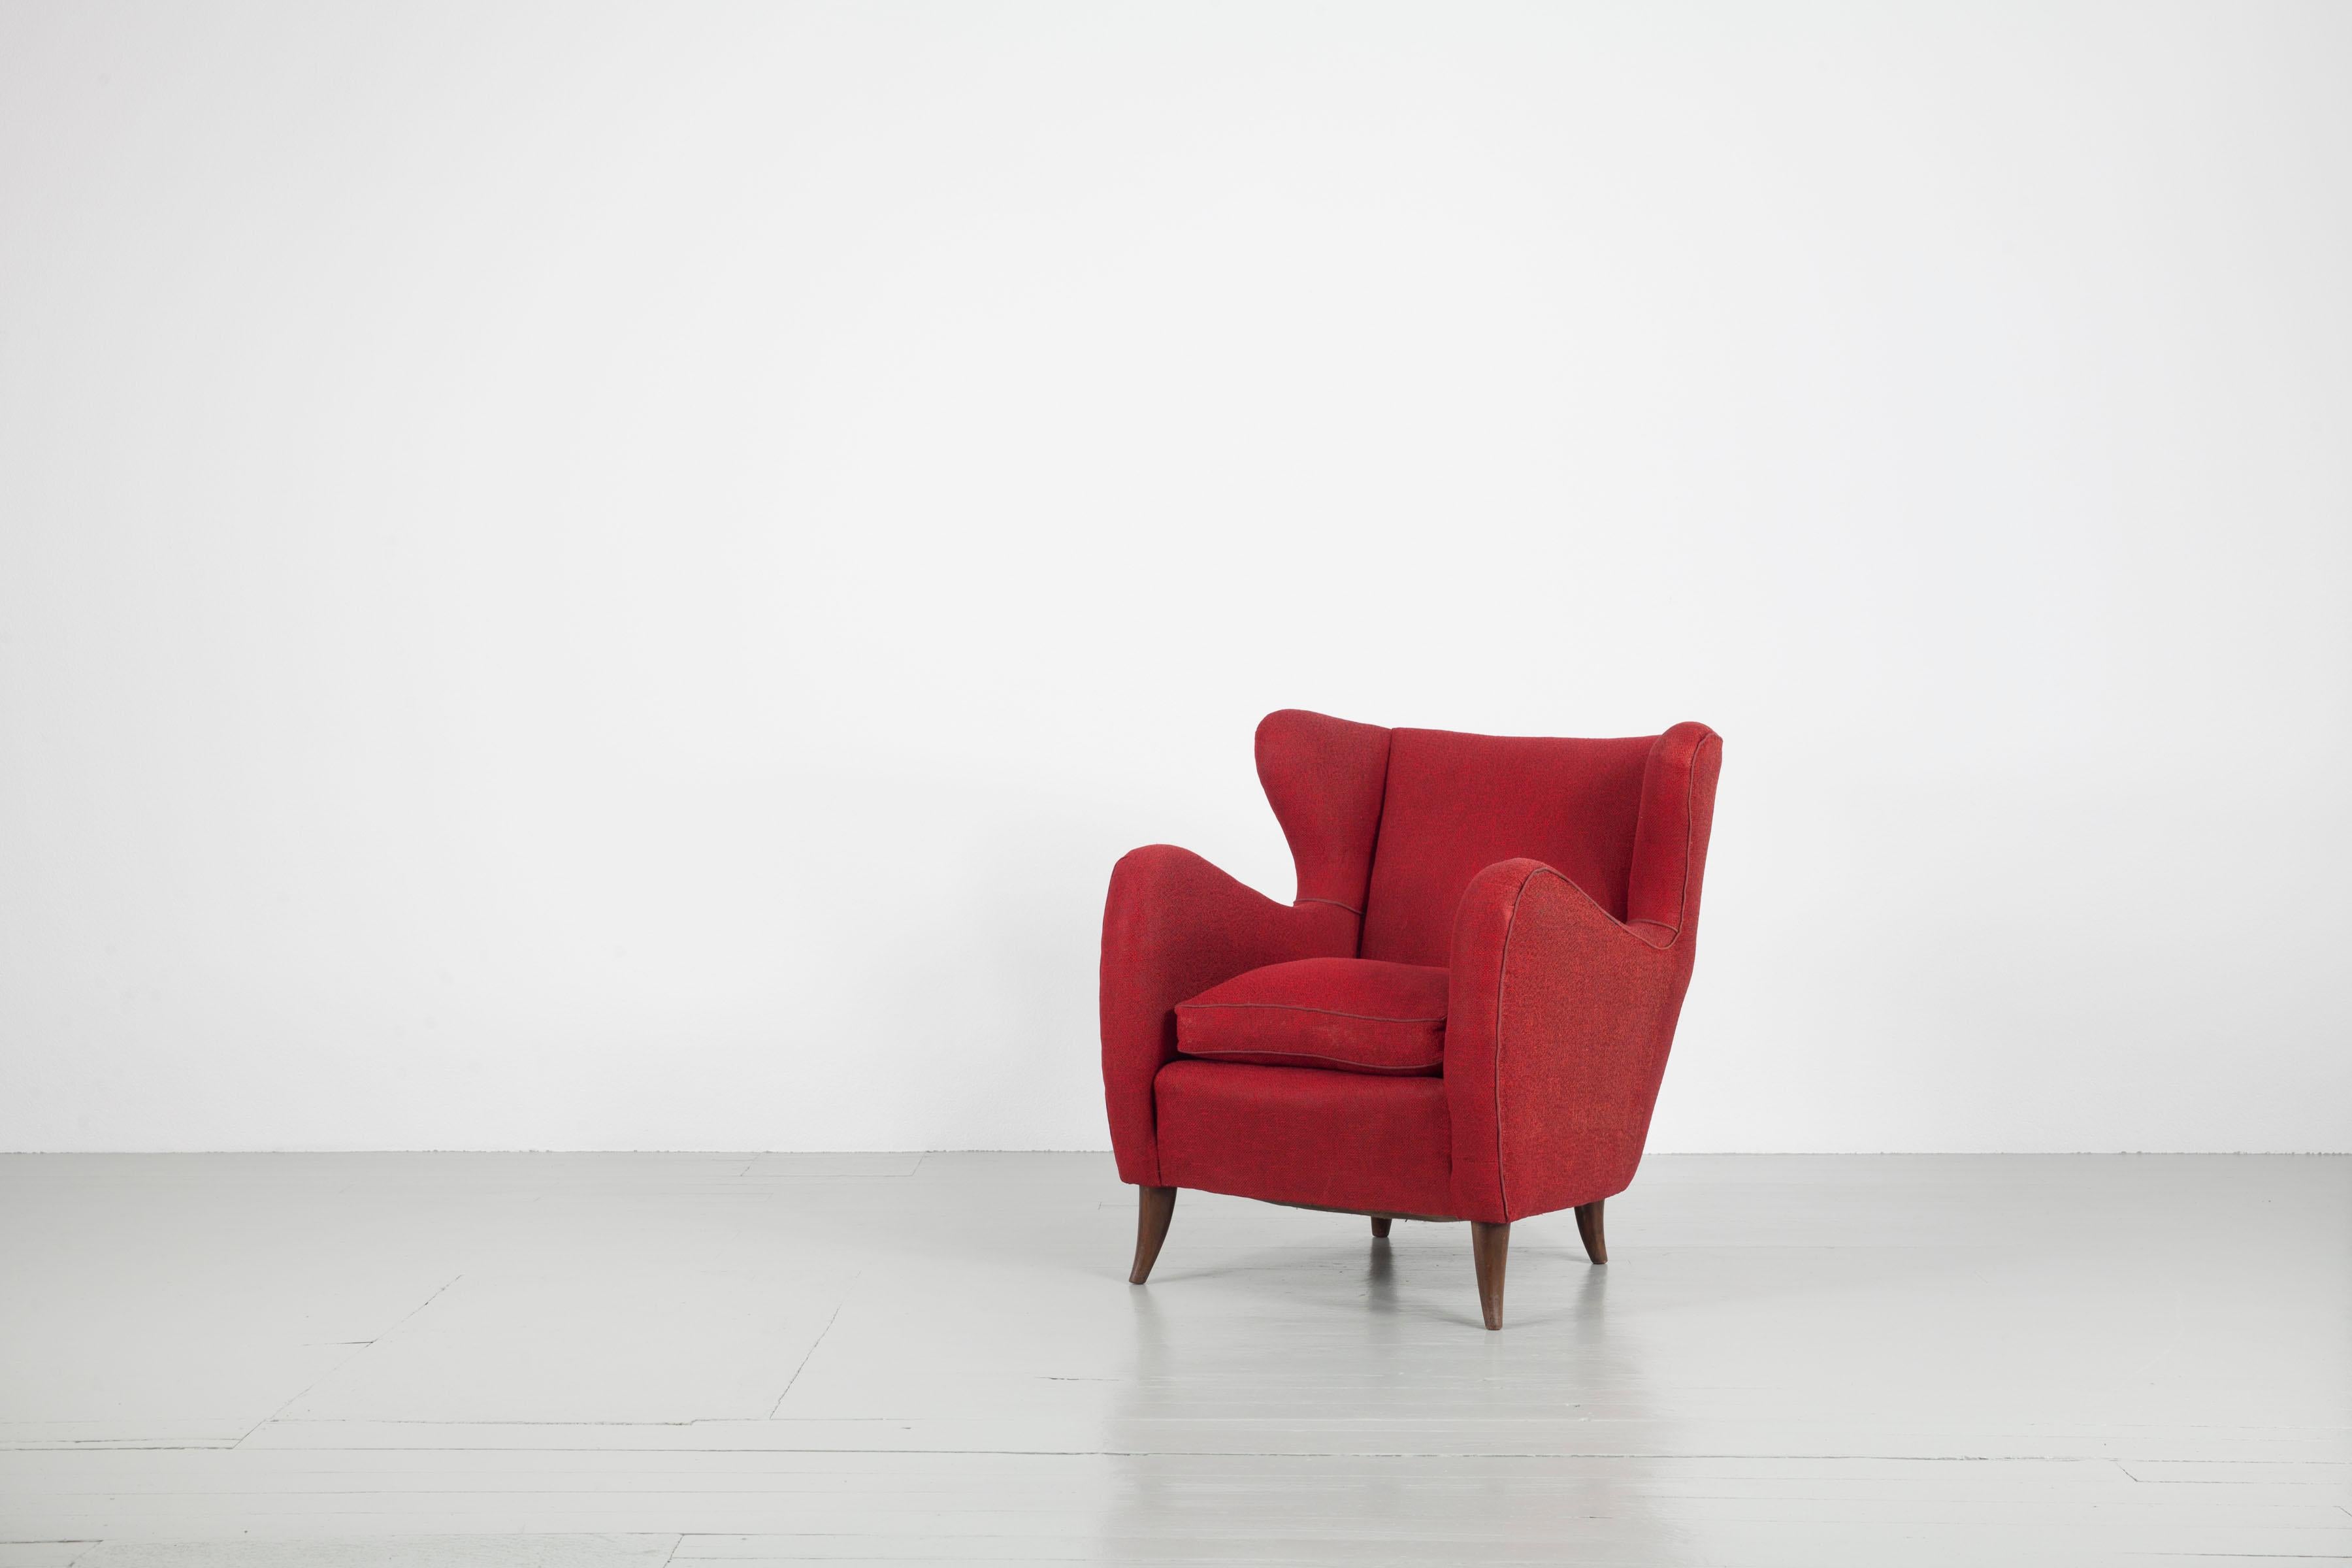 Paire de fauteuils designés par Melchiorre Bega, Italie, années 1950. Les chaises ont une forme incurvée compacte et présentent le tissu d'ameublement rouge d'origine. Les fauteuils sont fraîchement nettoyés et dans leur état d'origine.

     